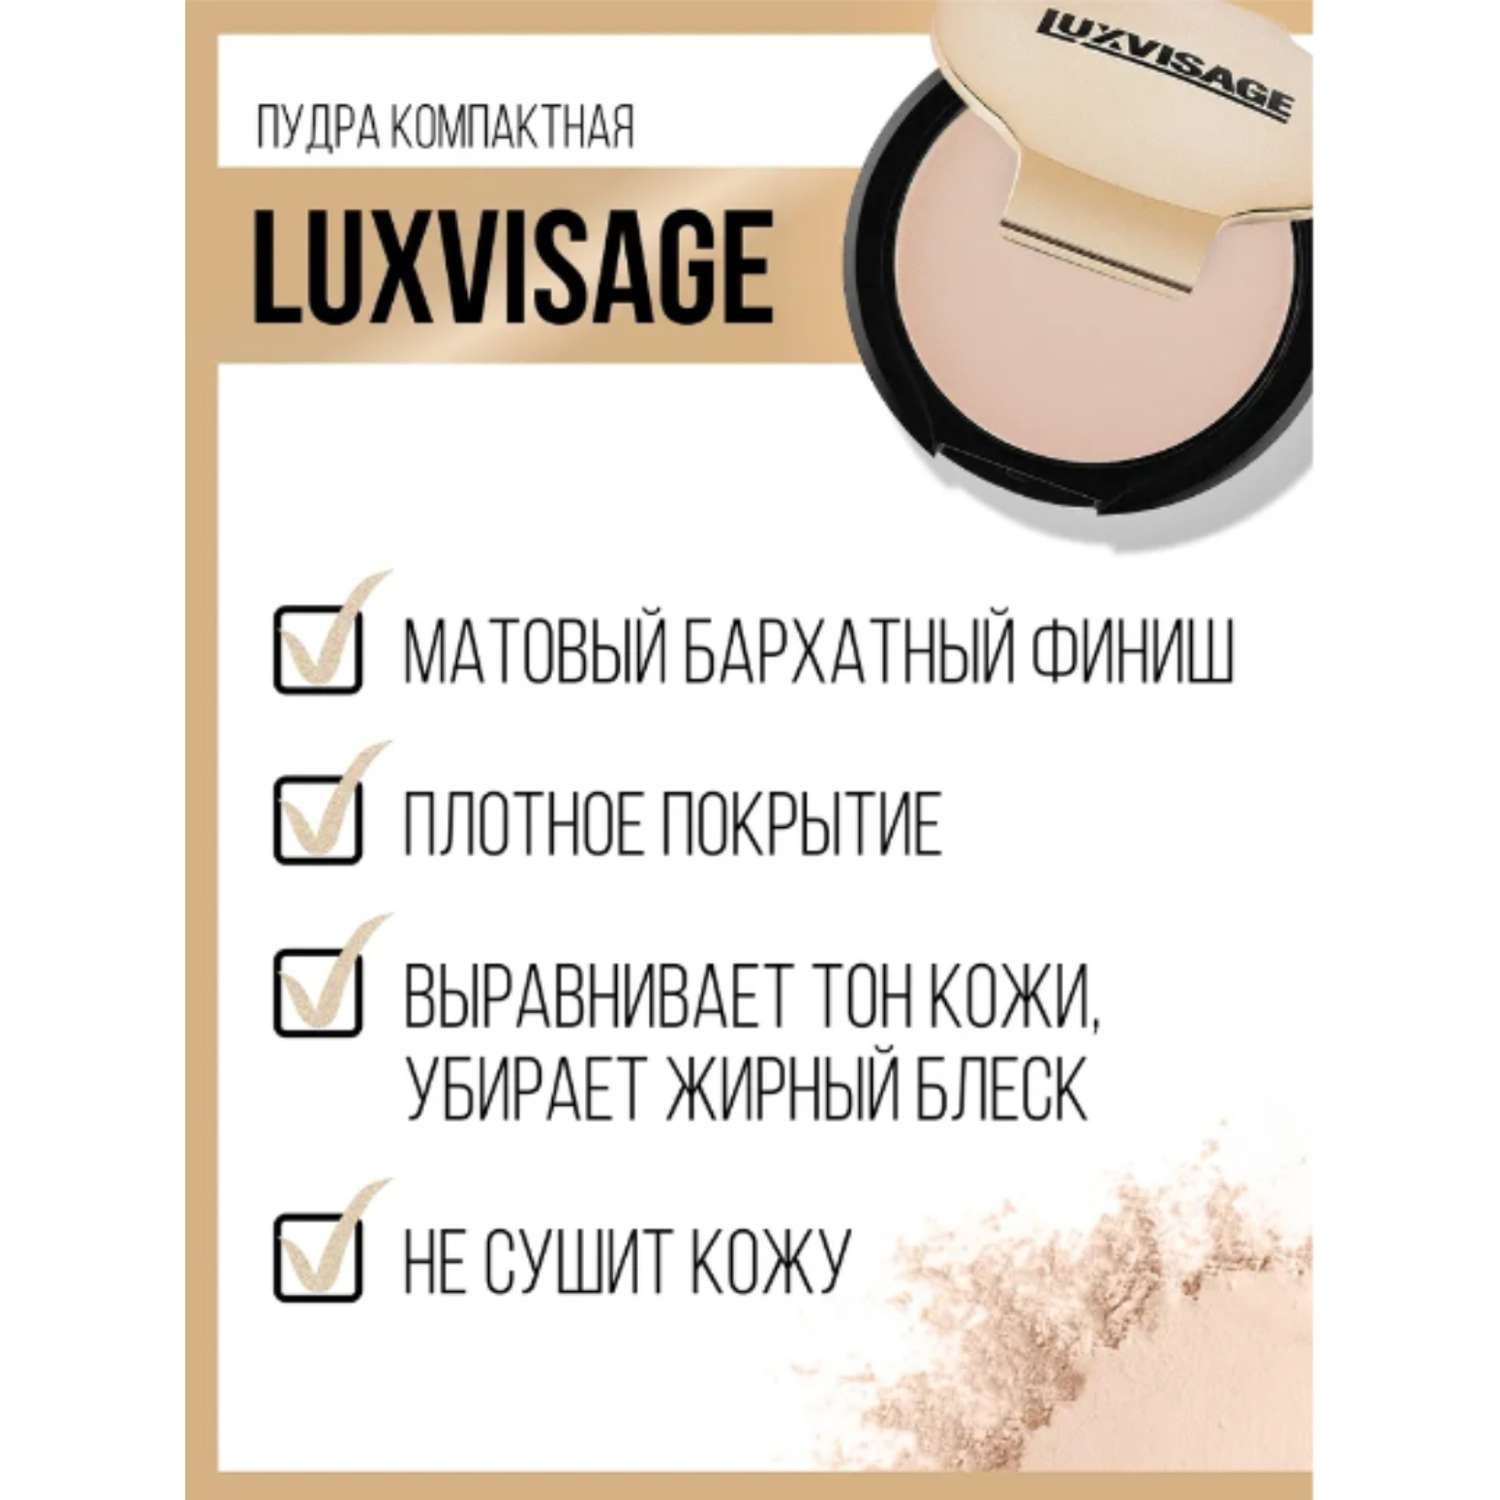 Пудра для лица Luxvisage компактная матирующая тон 11 светлый опалово-розовый - фото 6